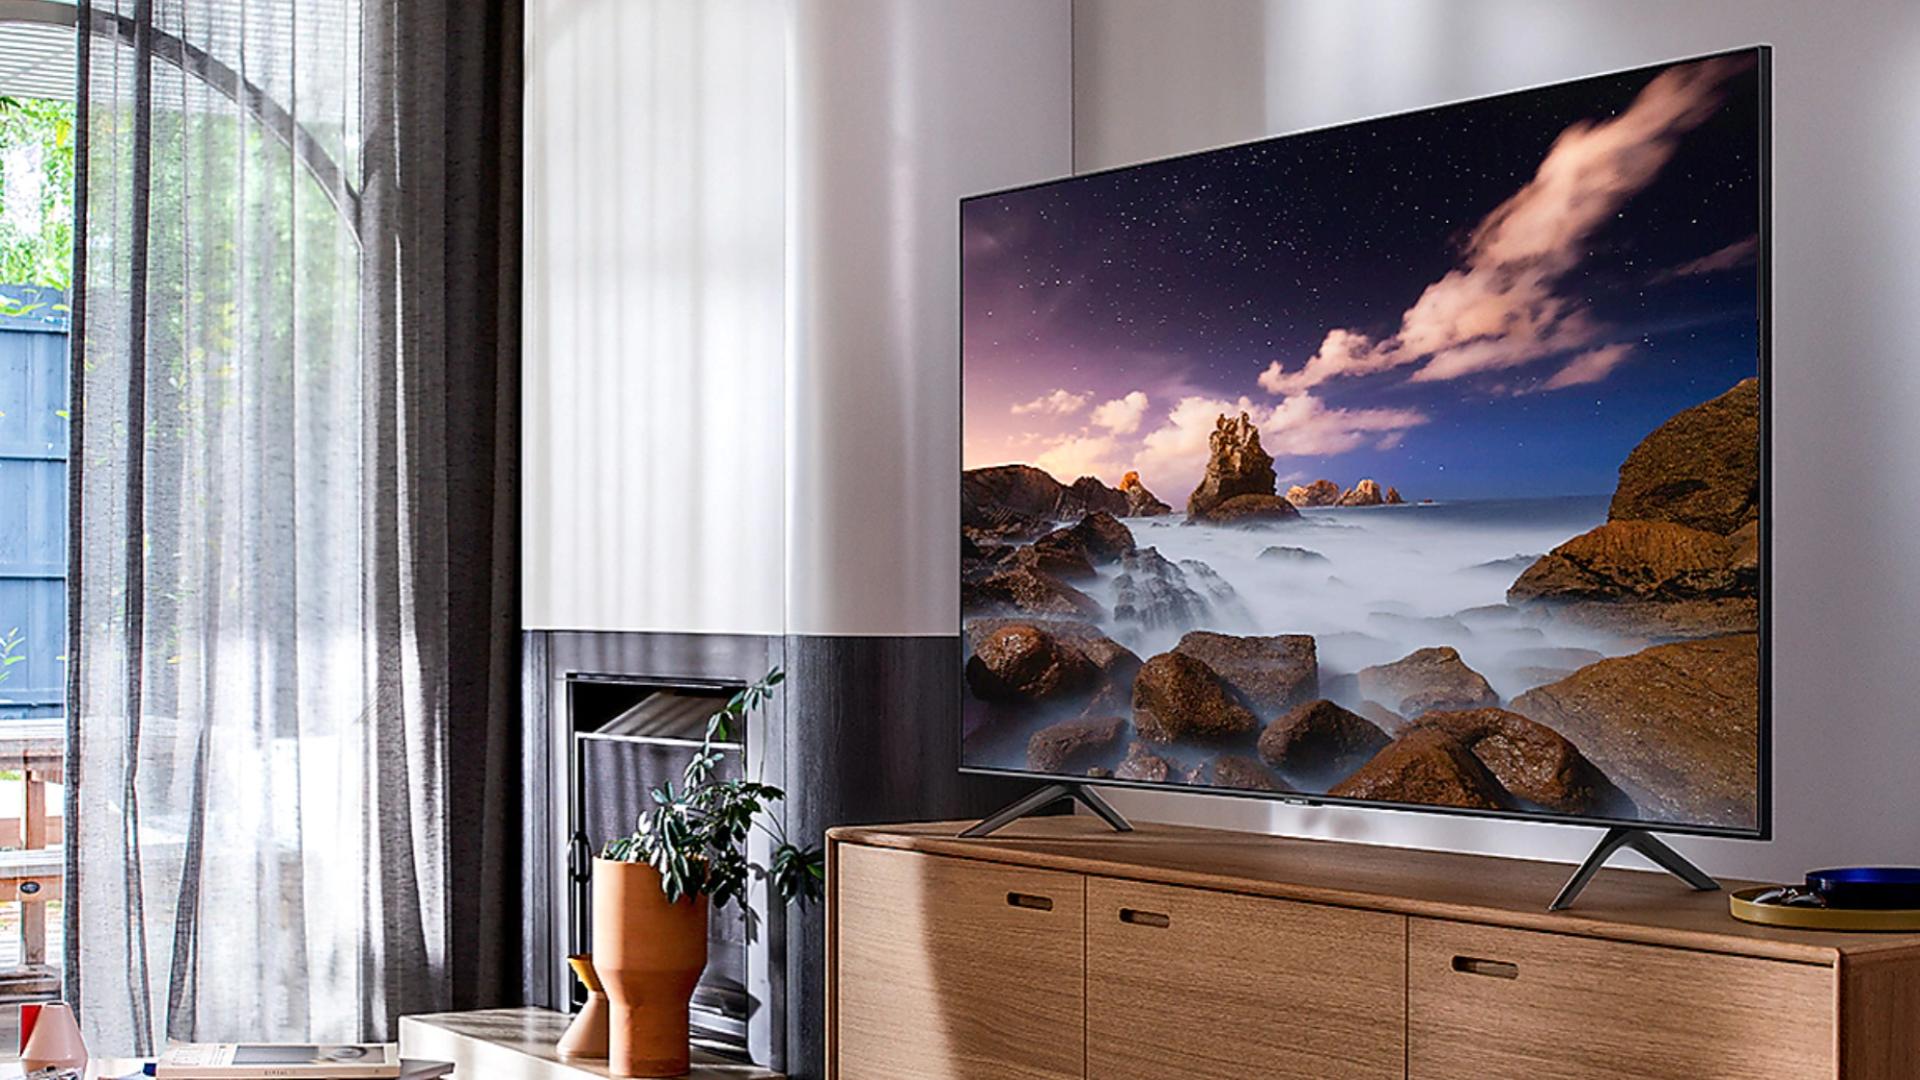 À moins de 1 000 €, le TV QLED 65 pouces de Samsung est un